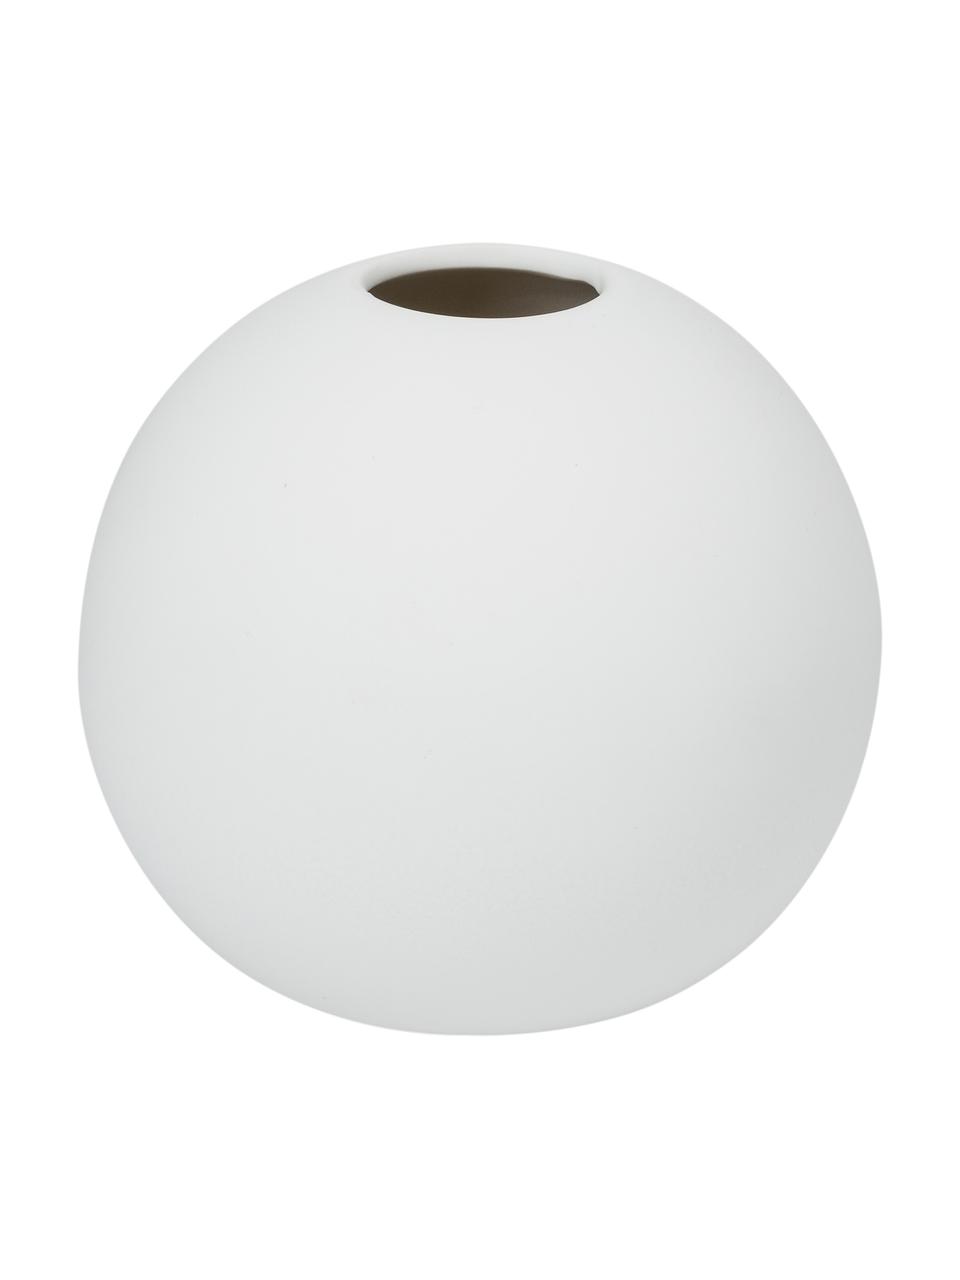 Handgefertigte Kugel-Vase Ball in Weiß, Keramik, Weiß, Ø 10 x H 10 cm